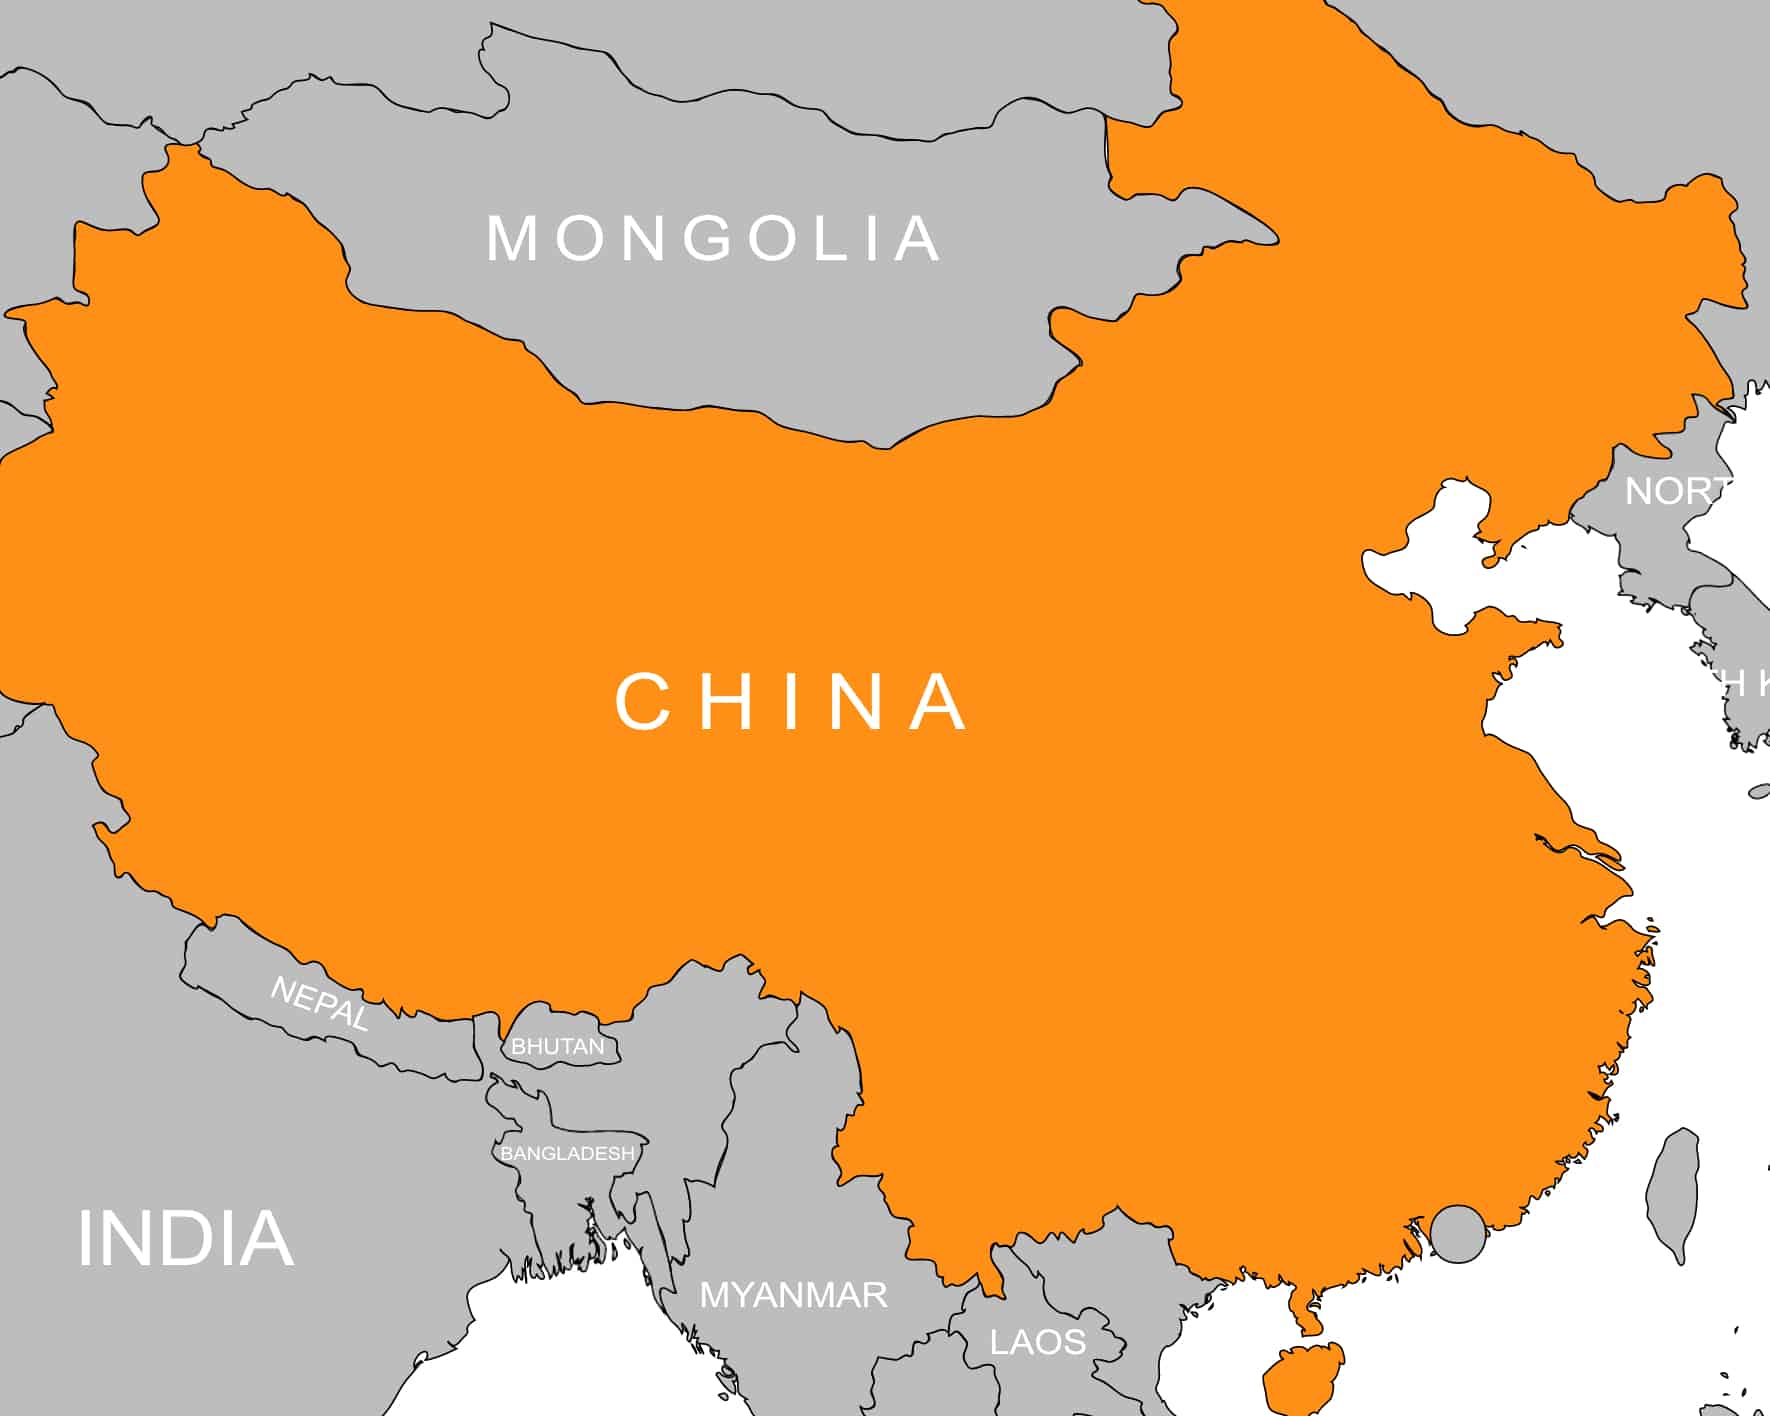 Tibet/China